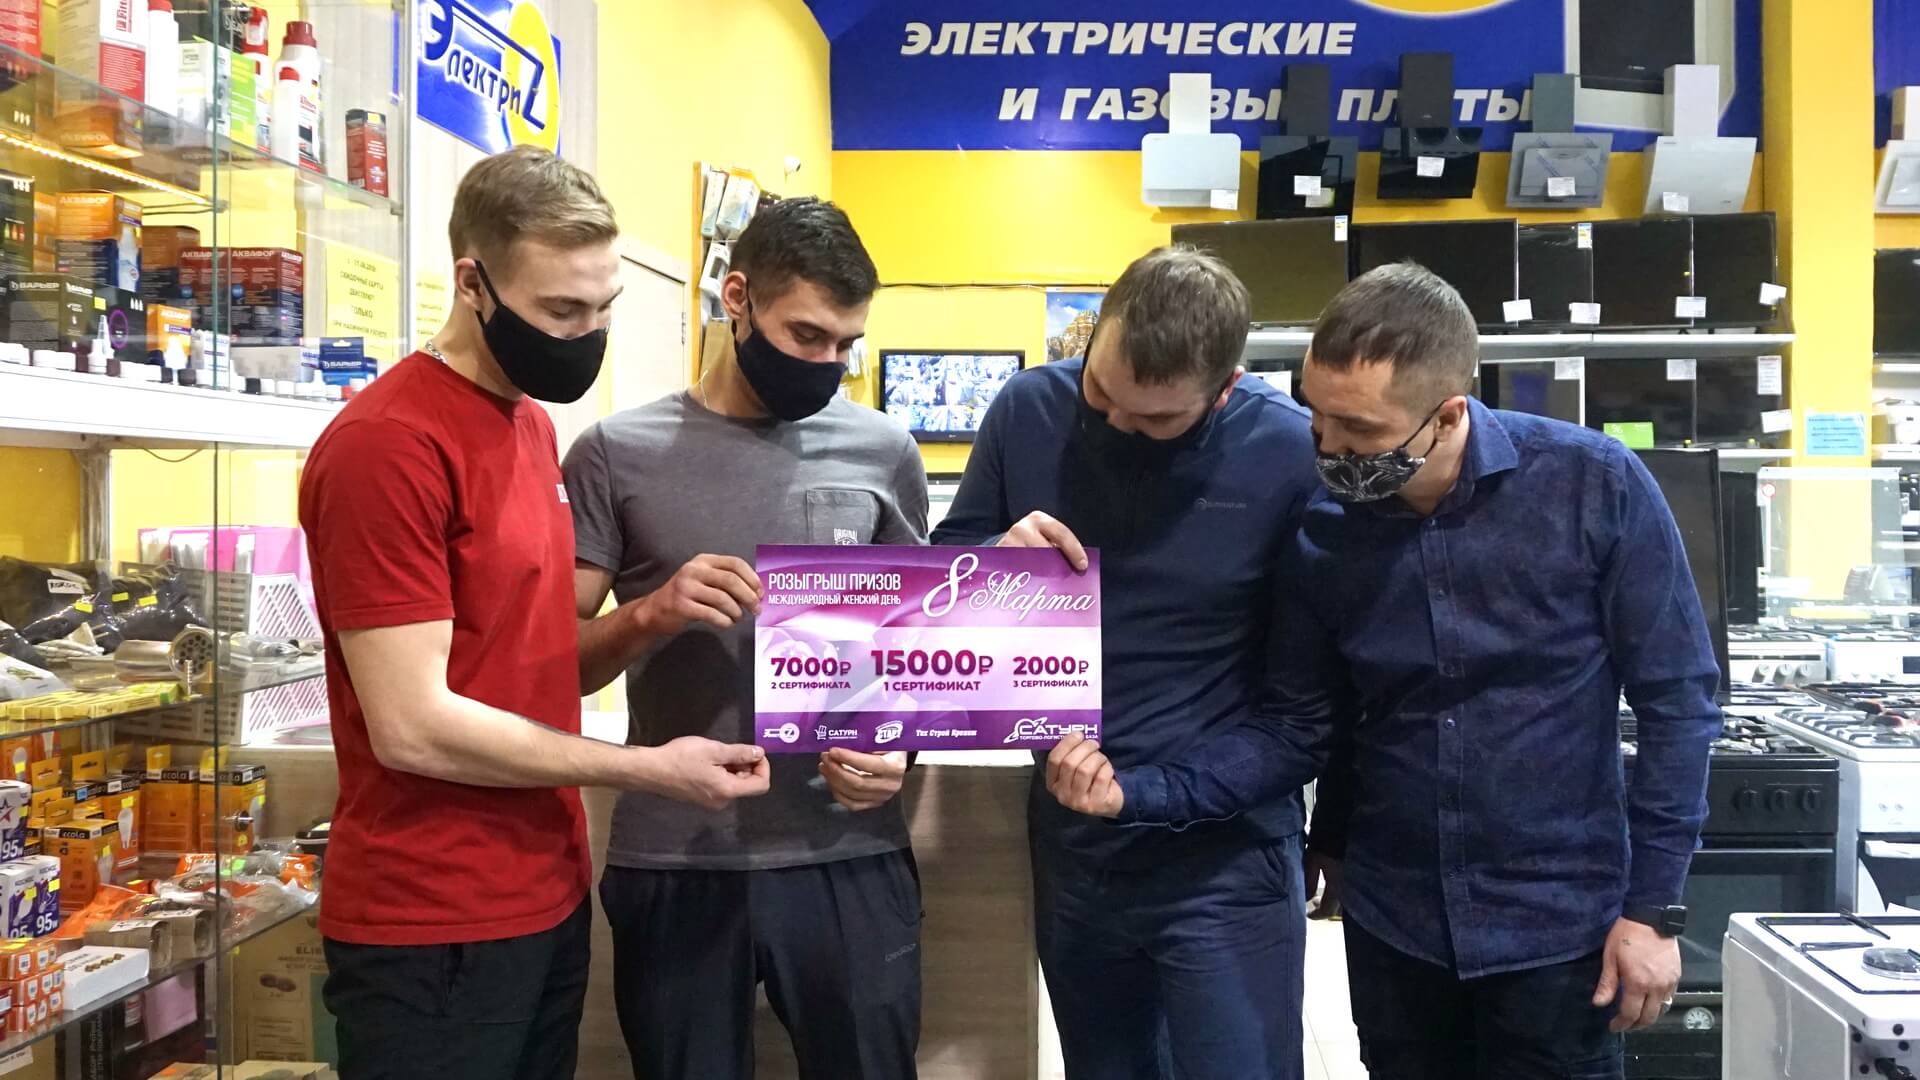 2 cертификата на 7000 рублей от магазина «Электриz», спонсора конкурса в инстаграм на 8 марта